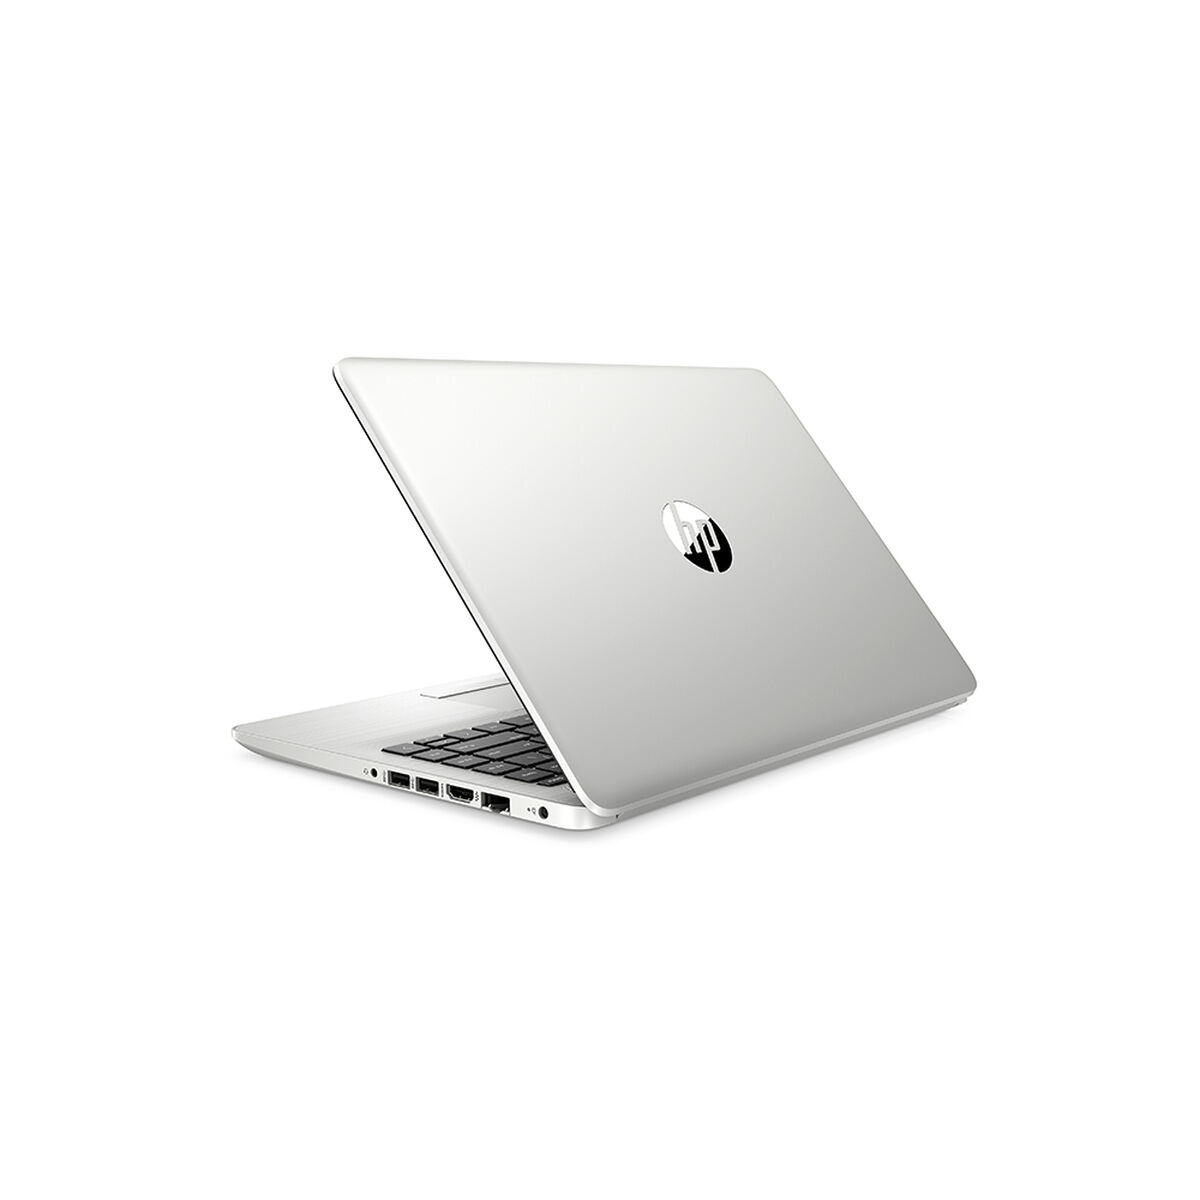 Notebook HP 348 G7 Core i3 4GB 1TB 14" | laPolar.cl